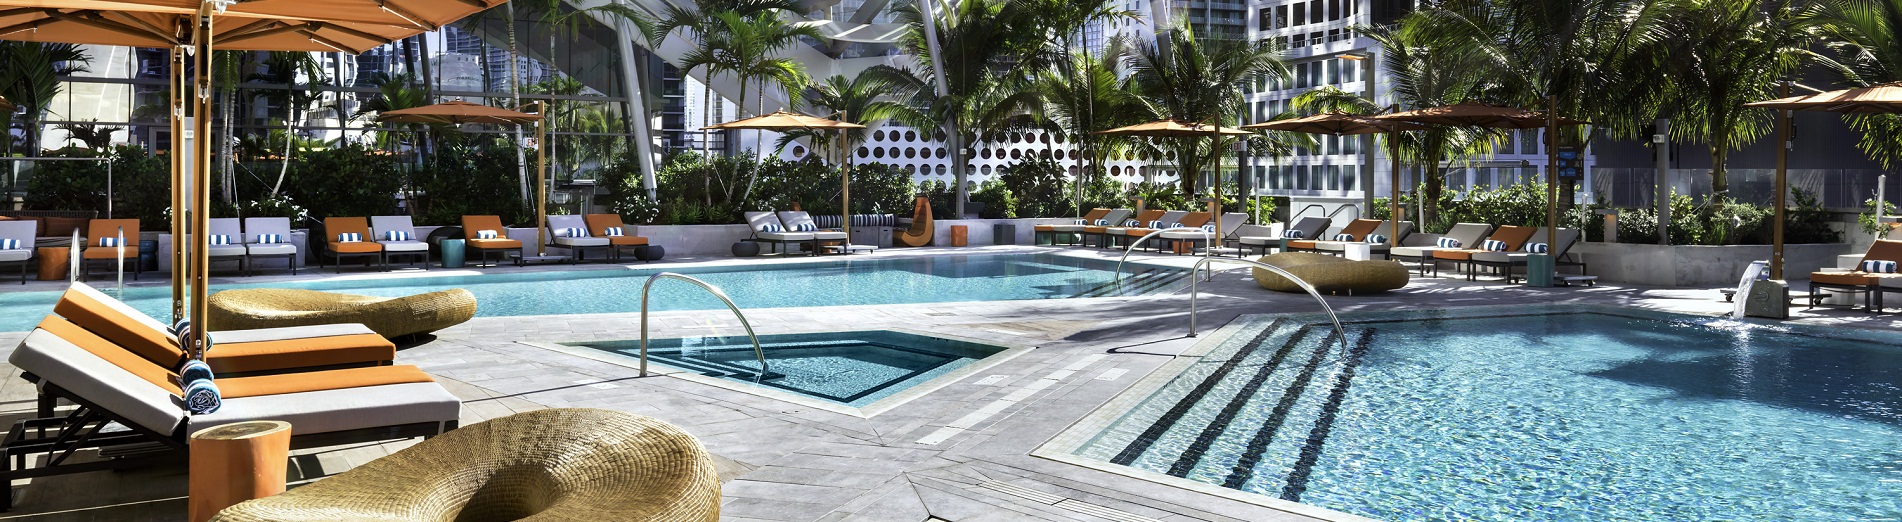 Piscinas lindas do hotel EAST Miami | foto: divulgação